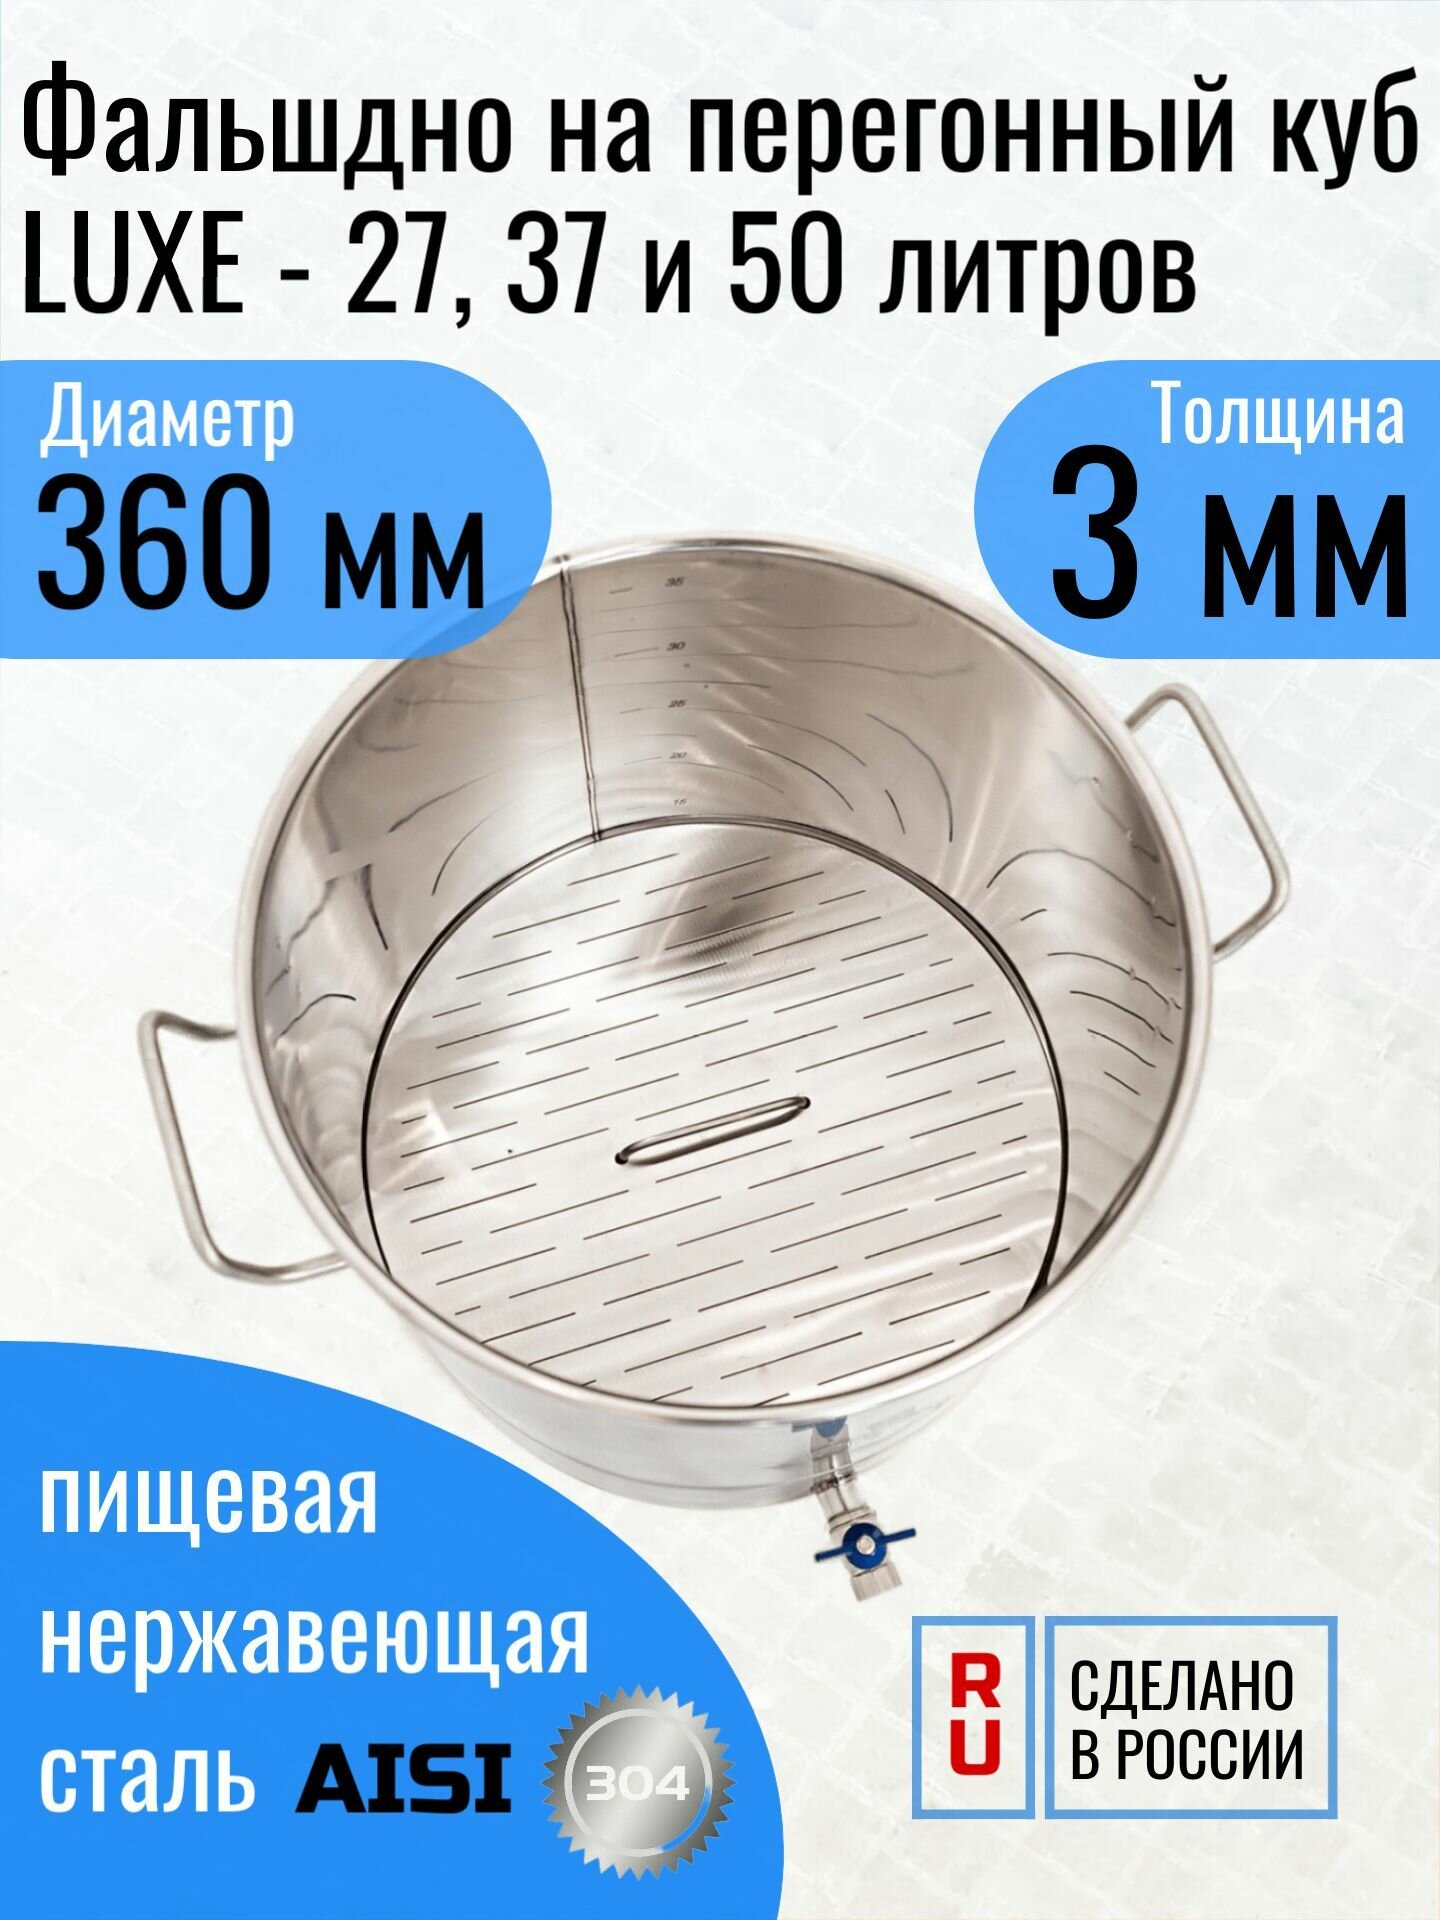 Фальшдно на перегонный куб LUXE - 27, 37 и 50 литров, толщина 3 мм